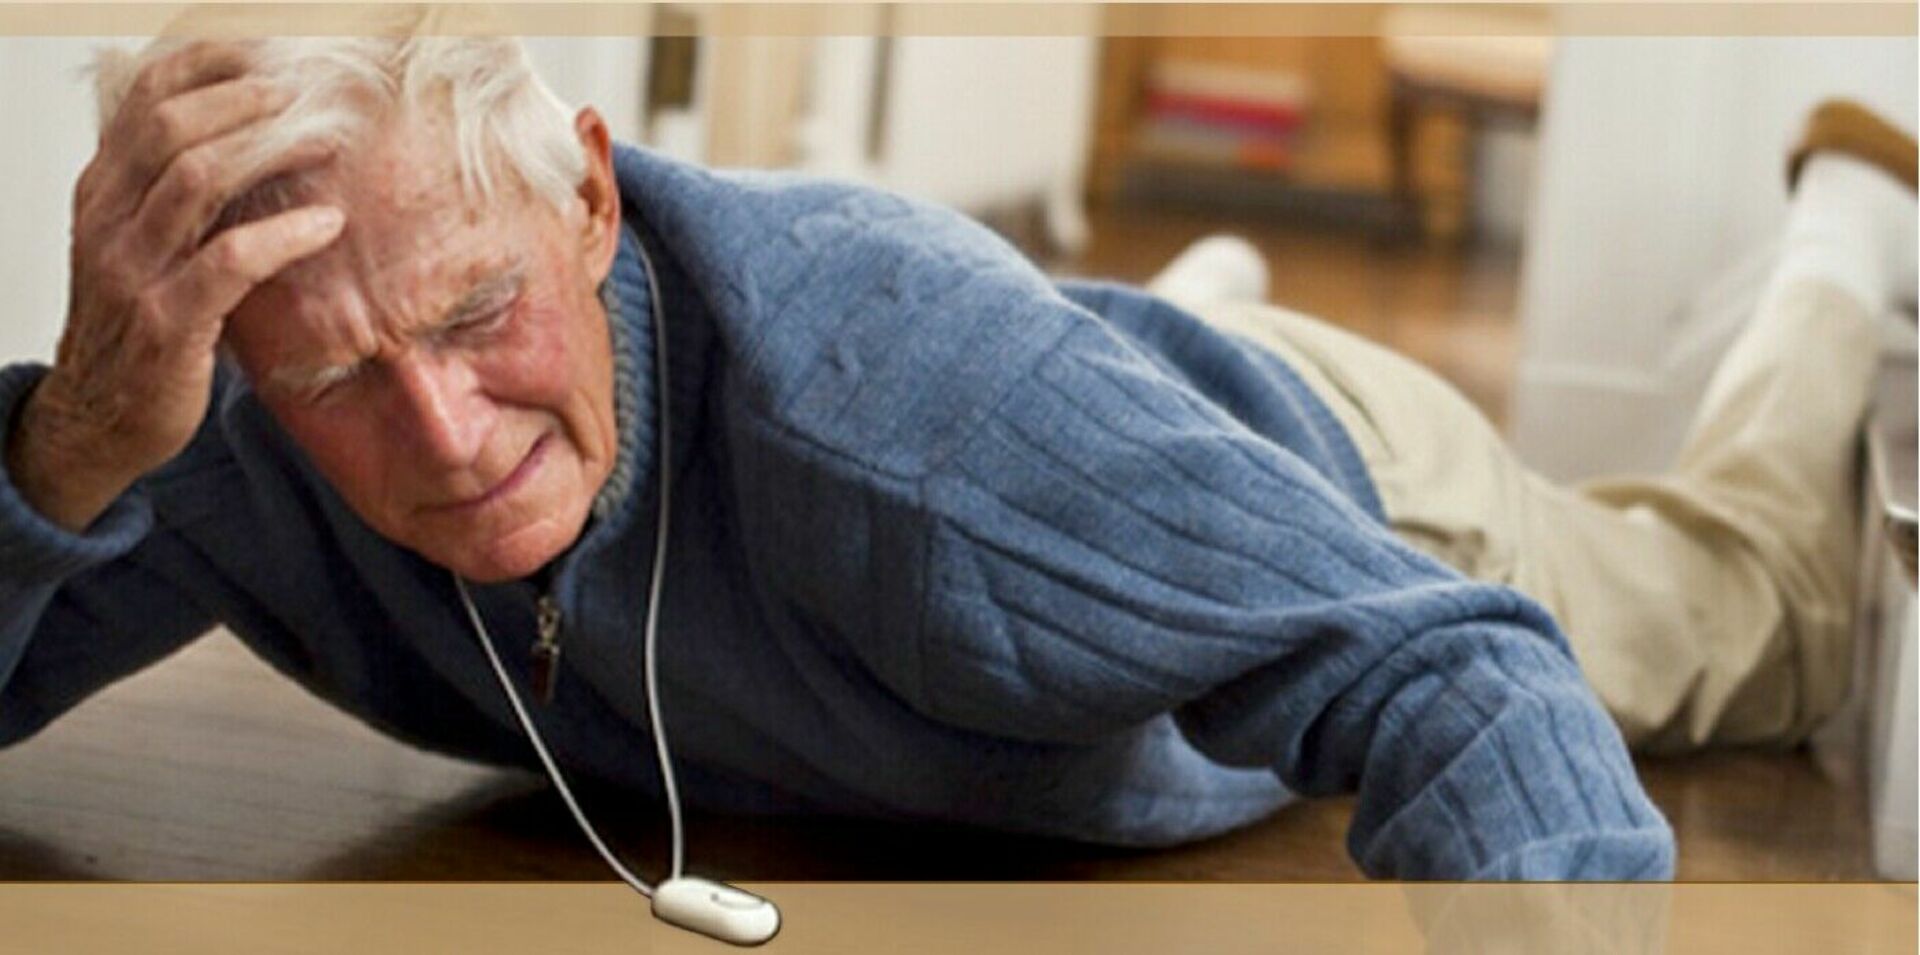 Трещина пожилая. Травматизм в пожилом возрасте. Травматизм пожилых людей. Падение пожилых. Старик падает.